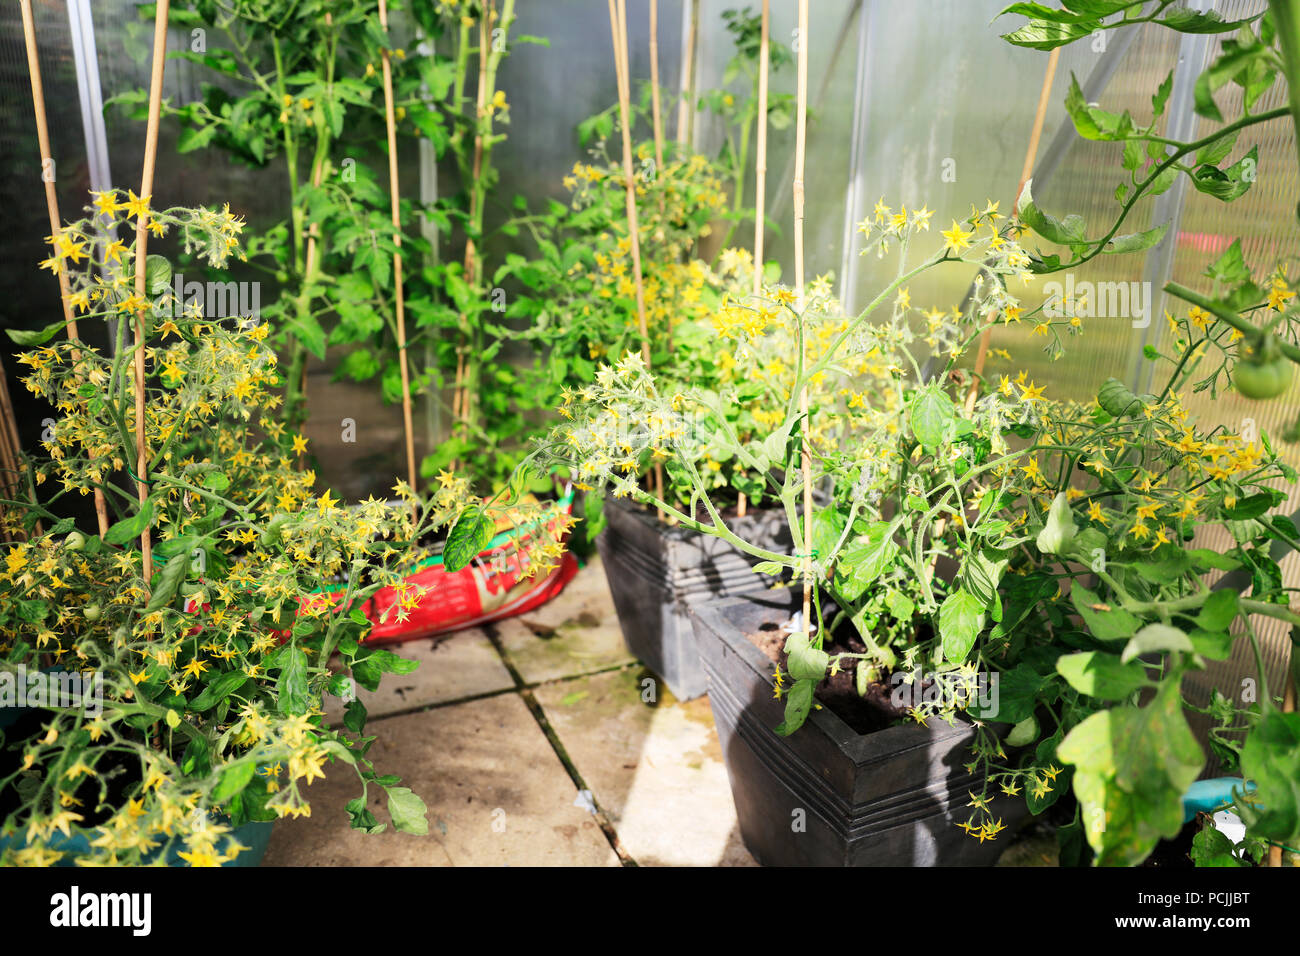 Tomates en bolsas de cultivo fotografías imágenes de - Alamy